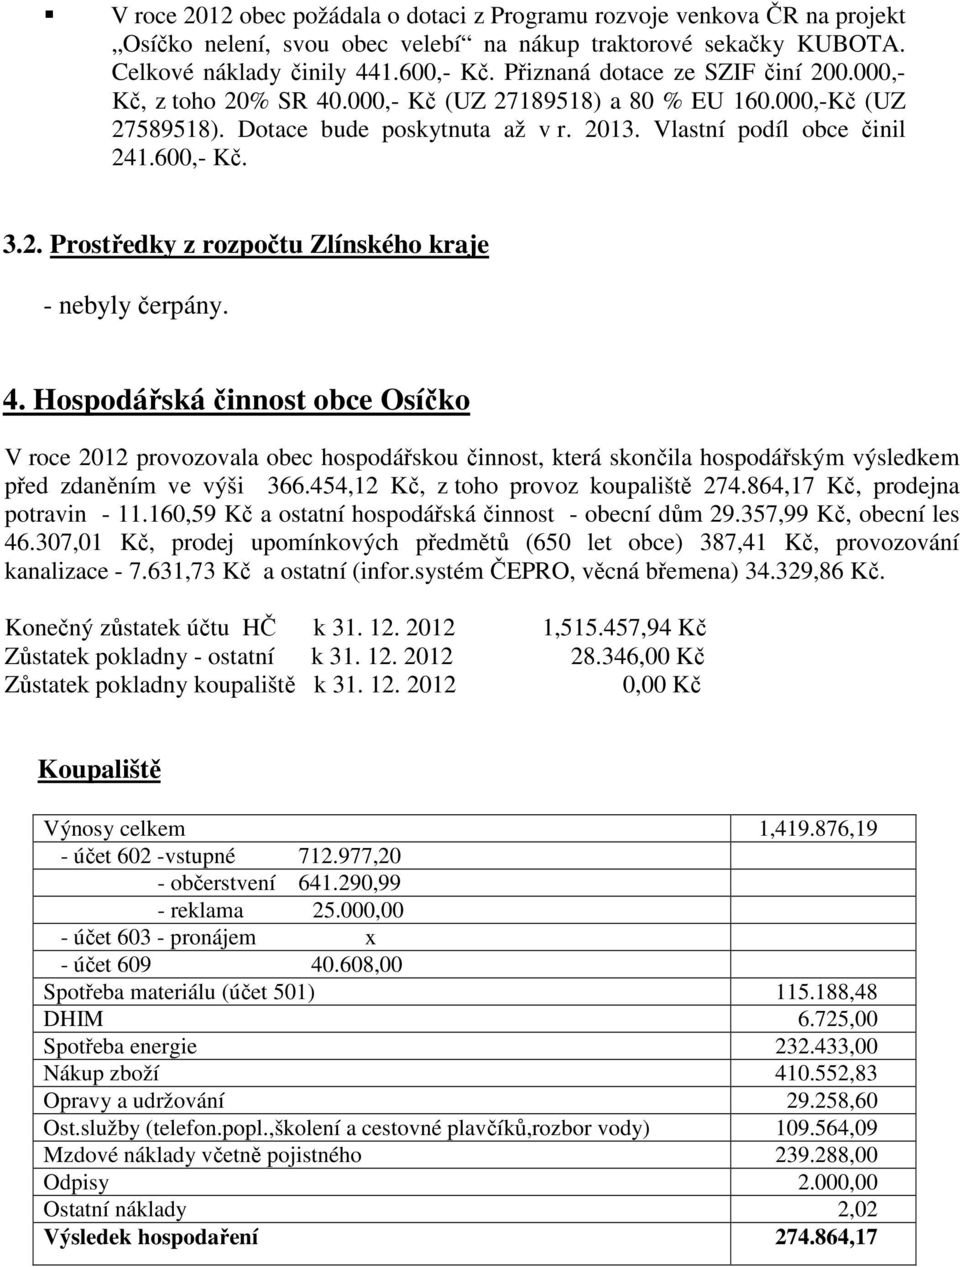 4. Hospodářská činnost obce Osíčko V roce 2012 provozovala obec hospodářskou činnost, která skončila hospodářským výsledkem před zdaněním ve výši 366.454,12 Kč, z toho provoz koupaliště 274.